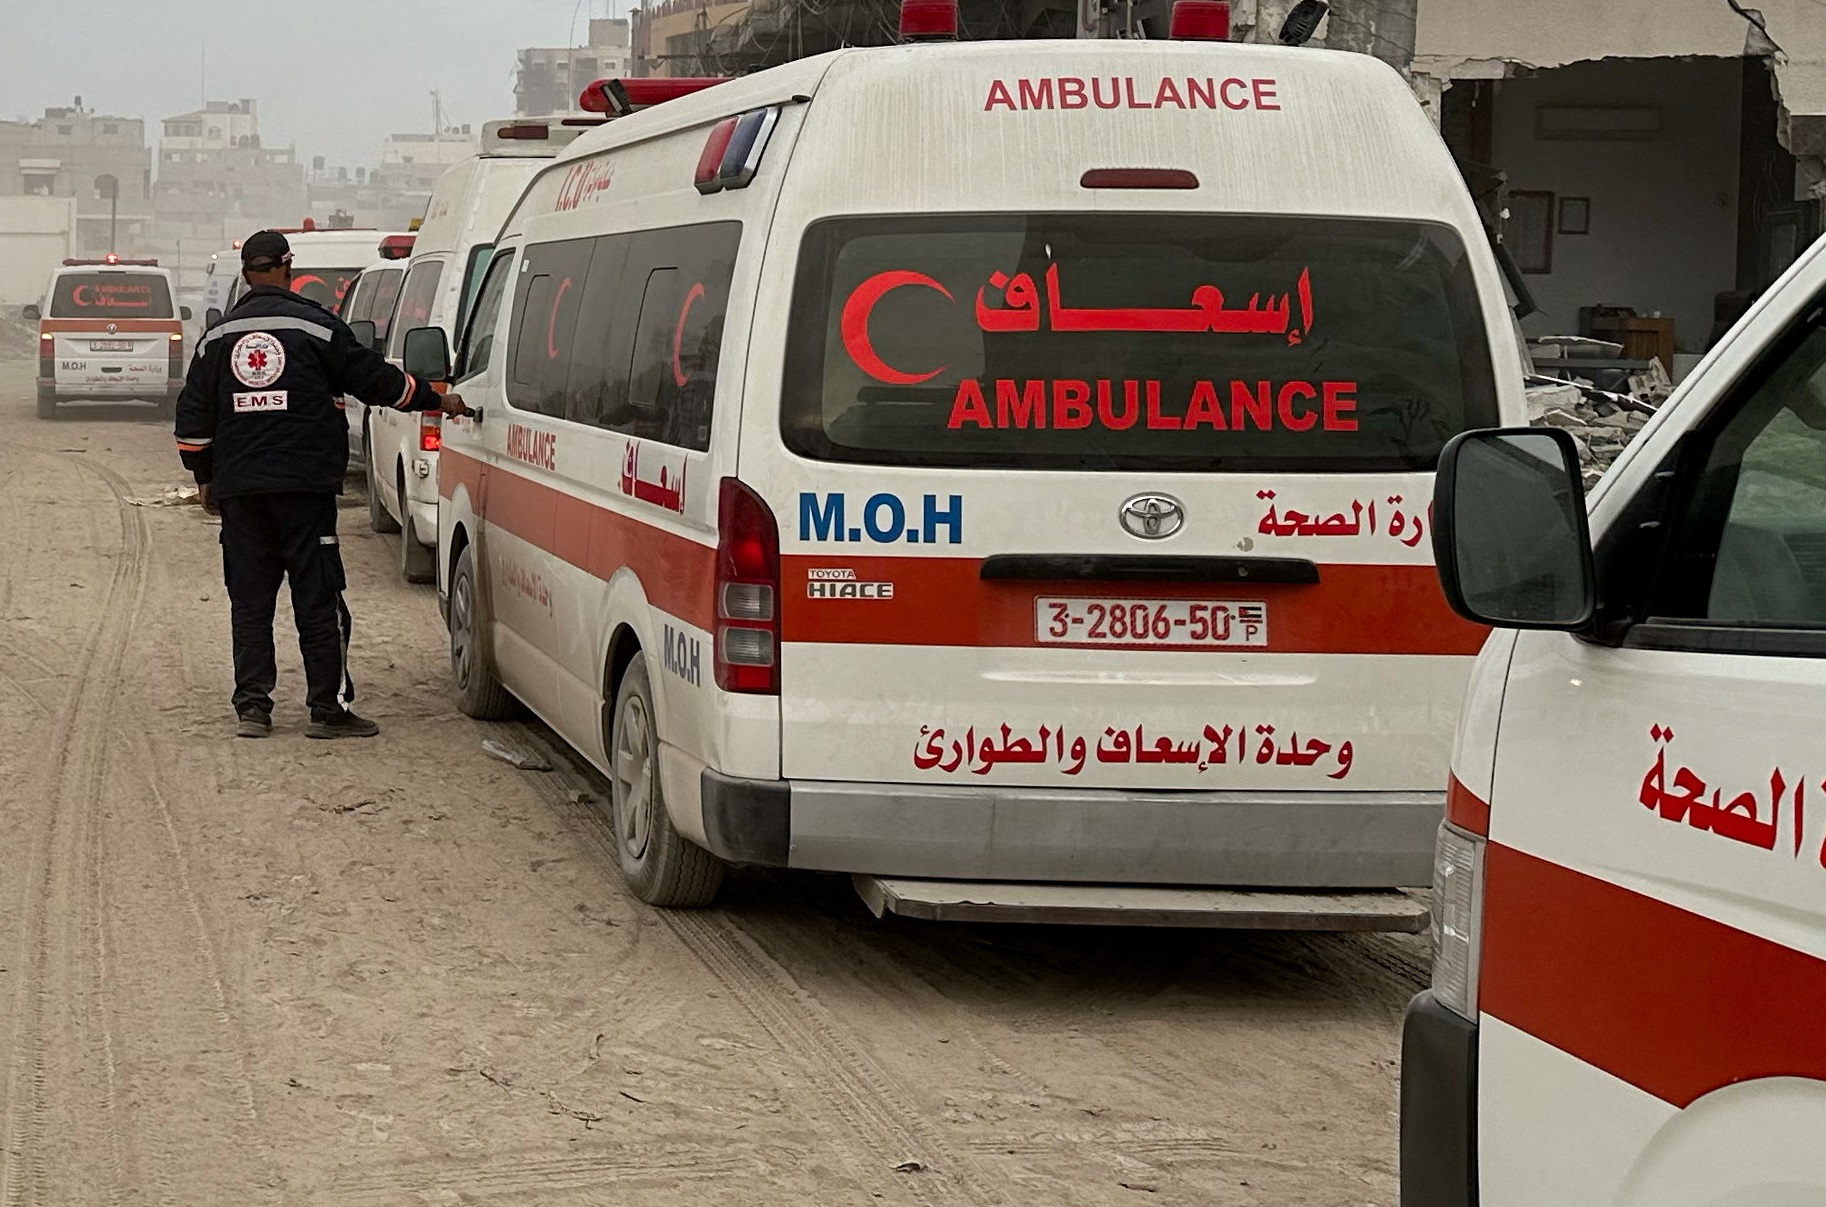 Το γαλλικό πλοίο που έχει μετατραπεί σε νοσοκομείο δέχεται τους πρώτους ασθενείς από τη Λωρίδα της Γάζας